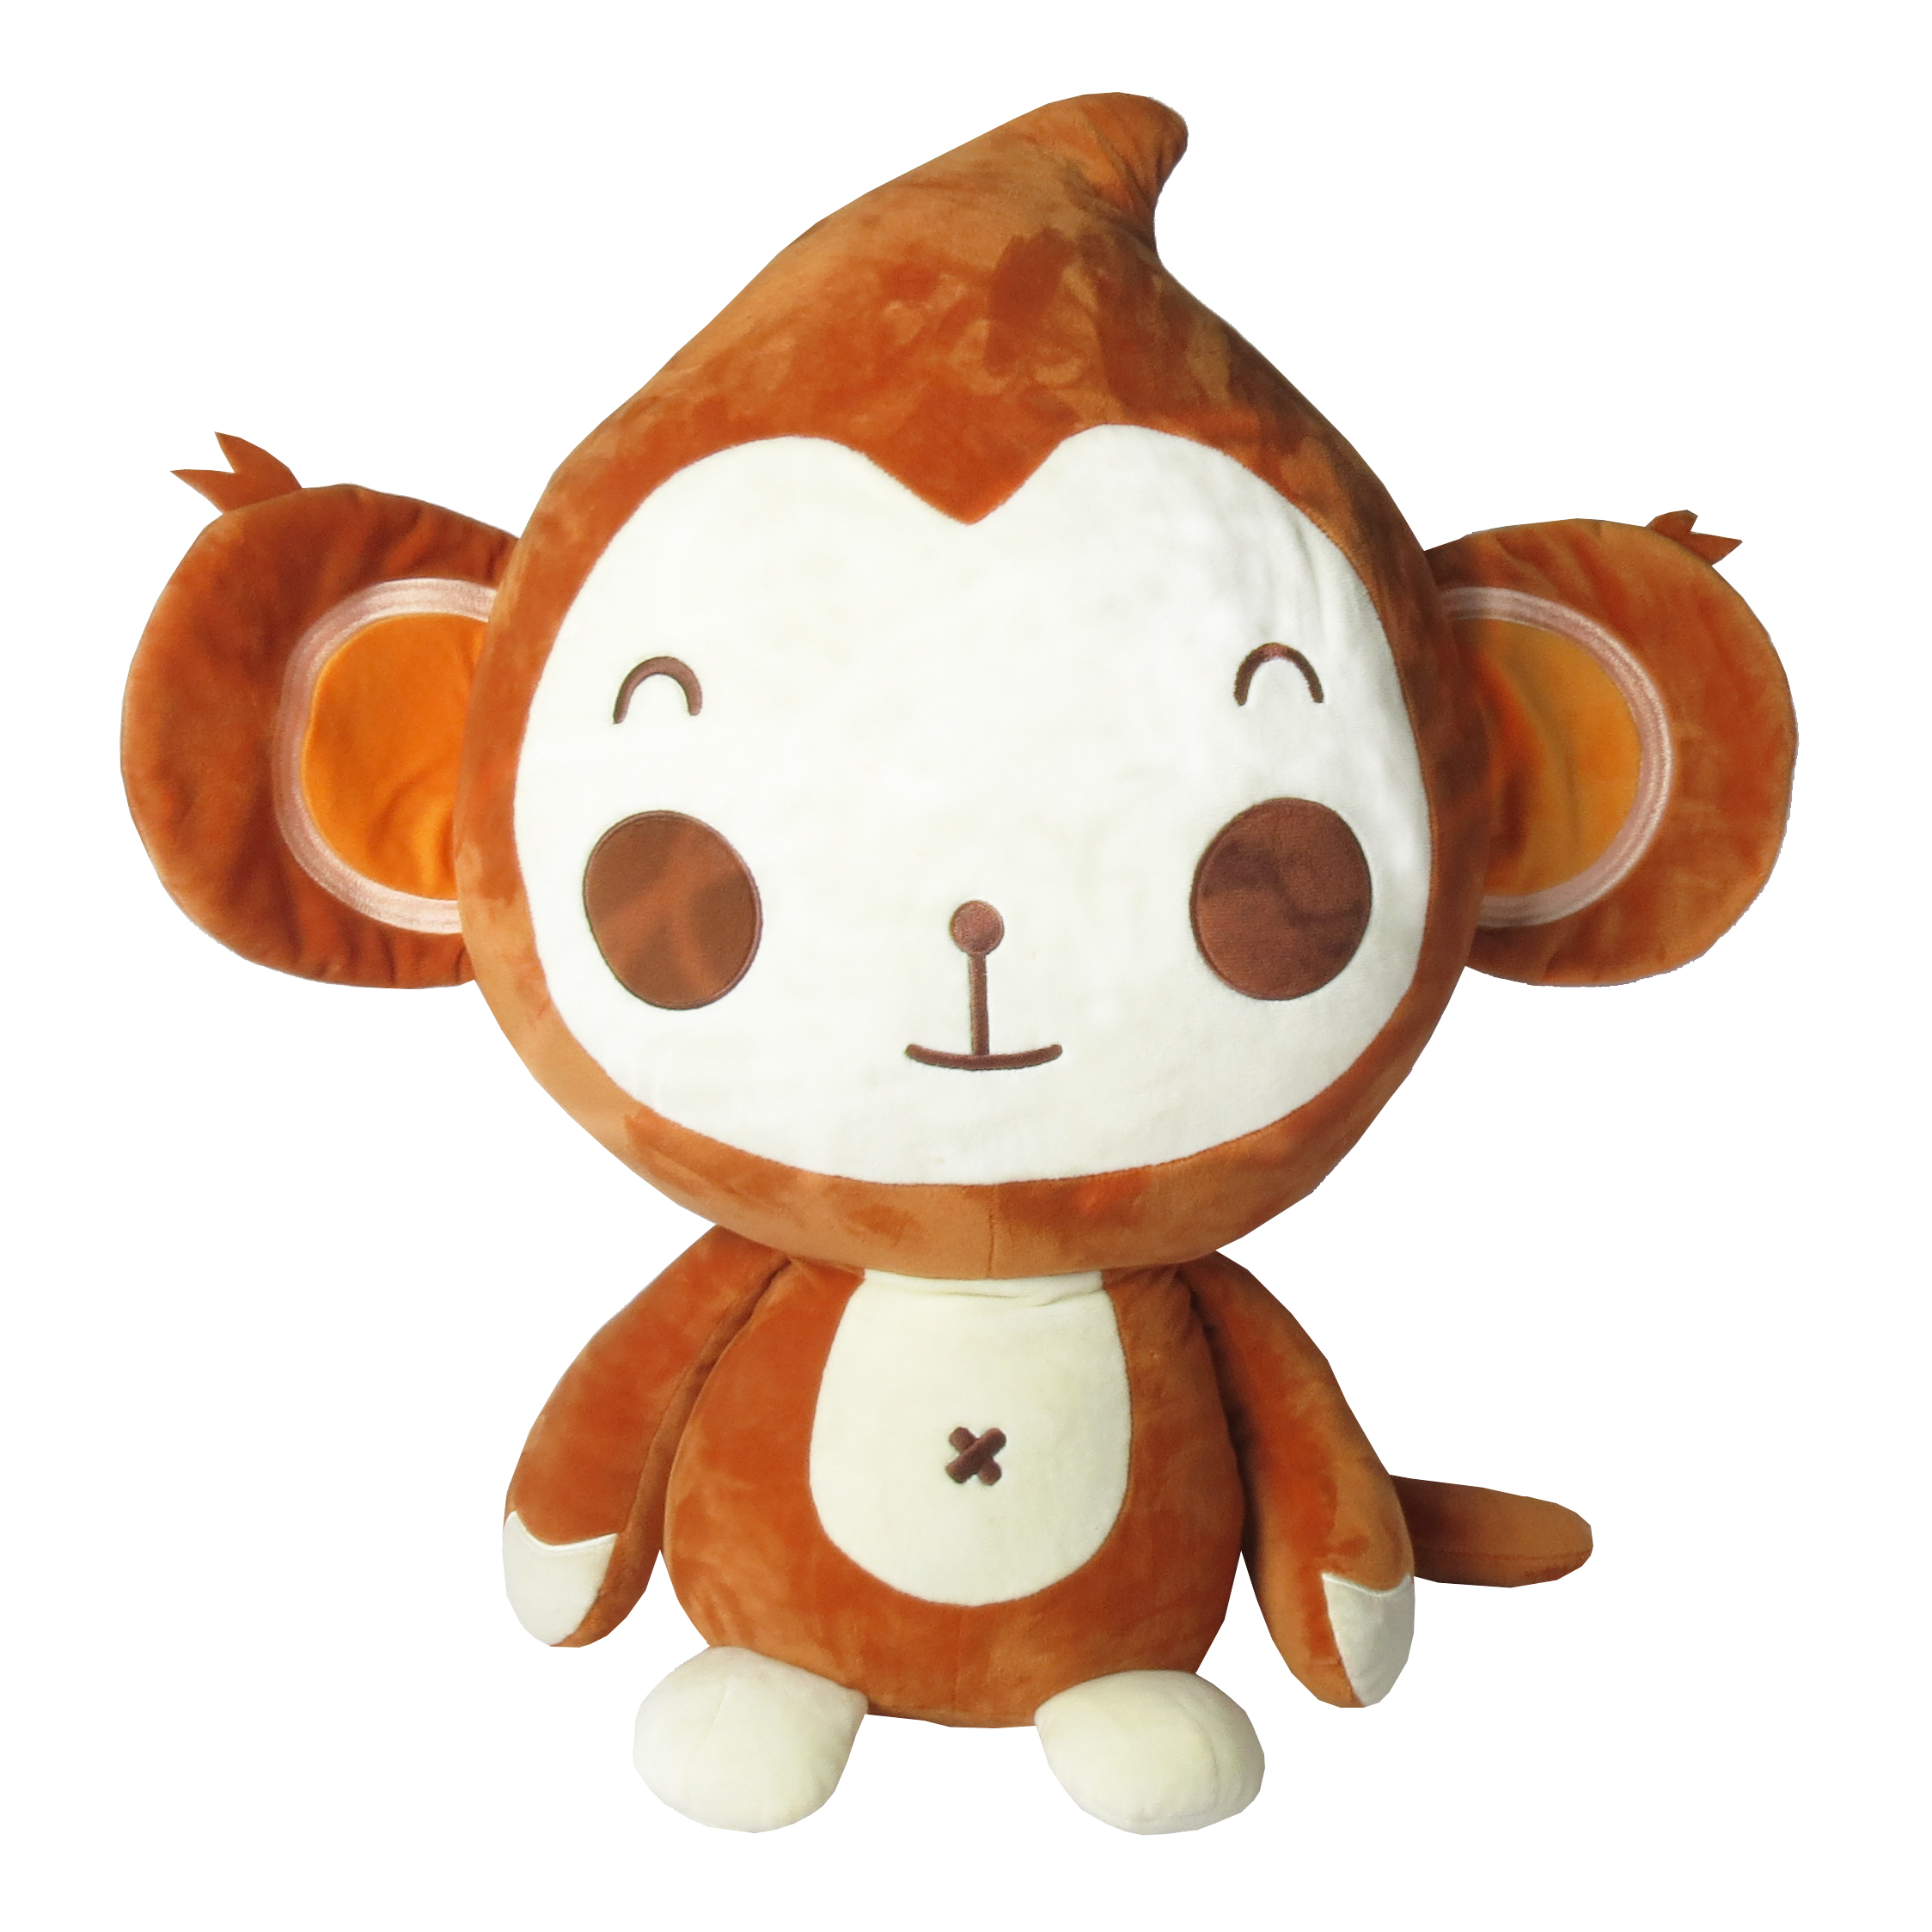 深圳毛绒玩具厂家定做毛绒动物公仔广告礼品赠送吉祥物定制图片